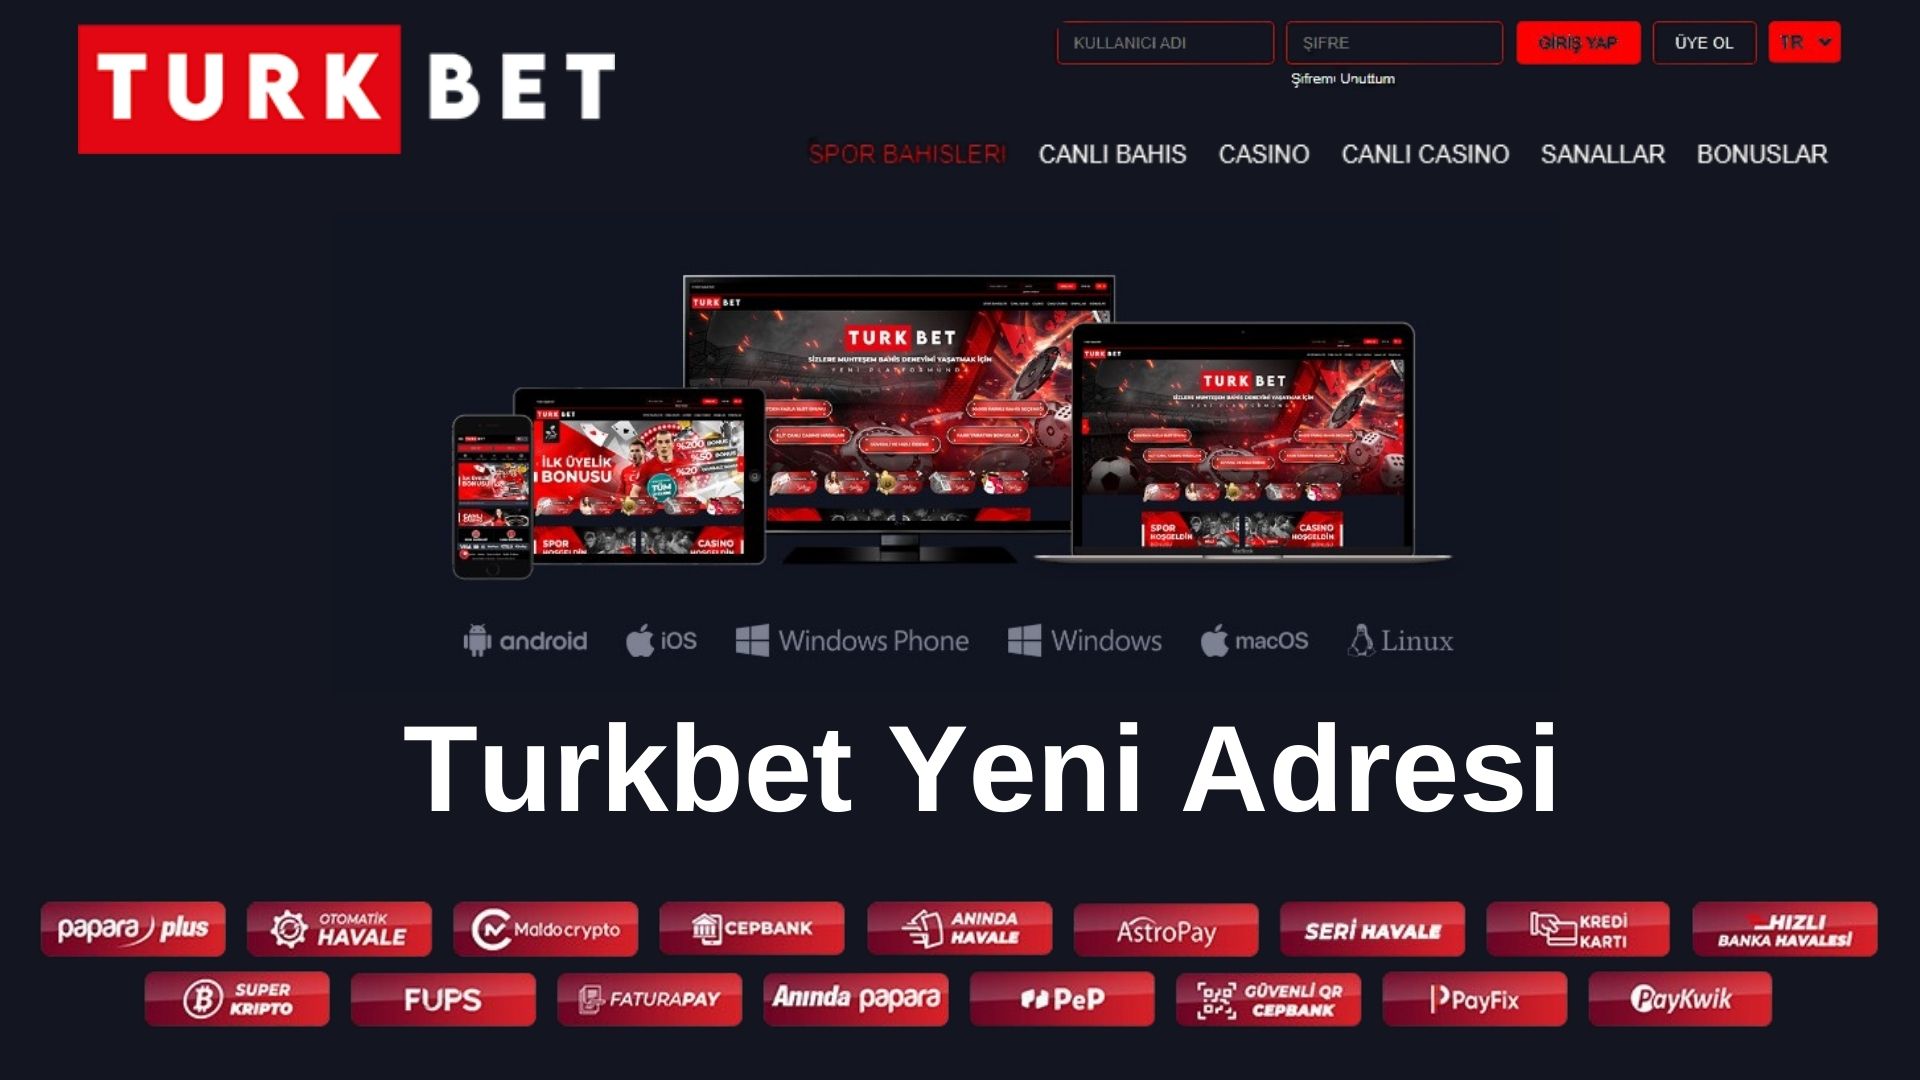 Turkbet Yeni Adresi